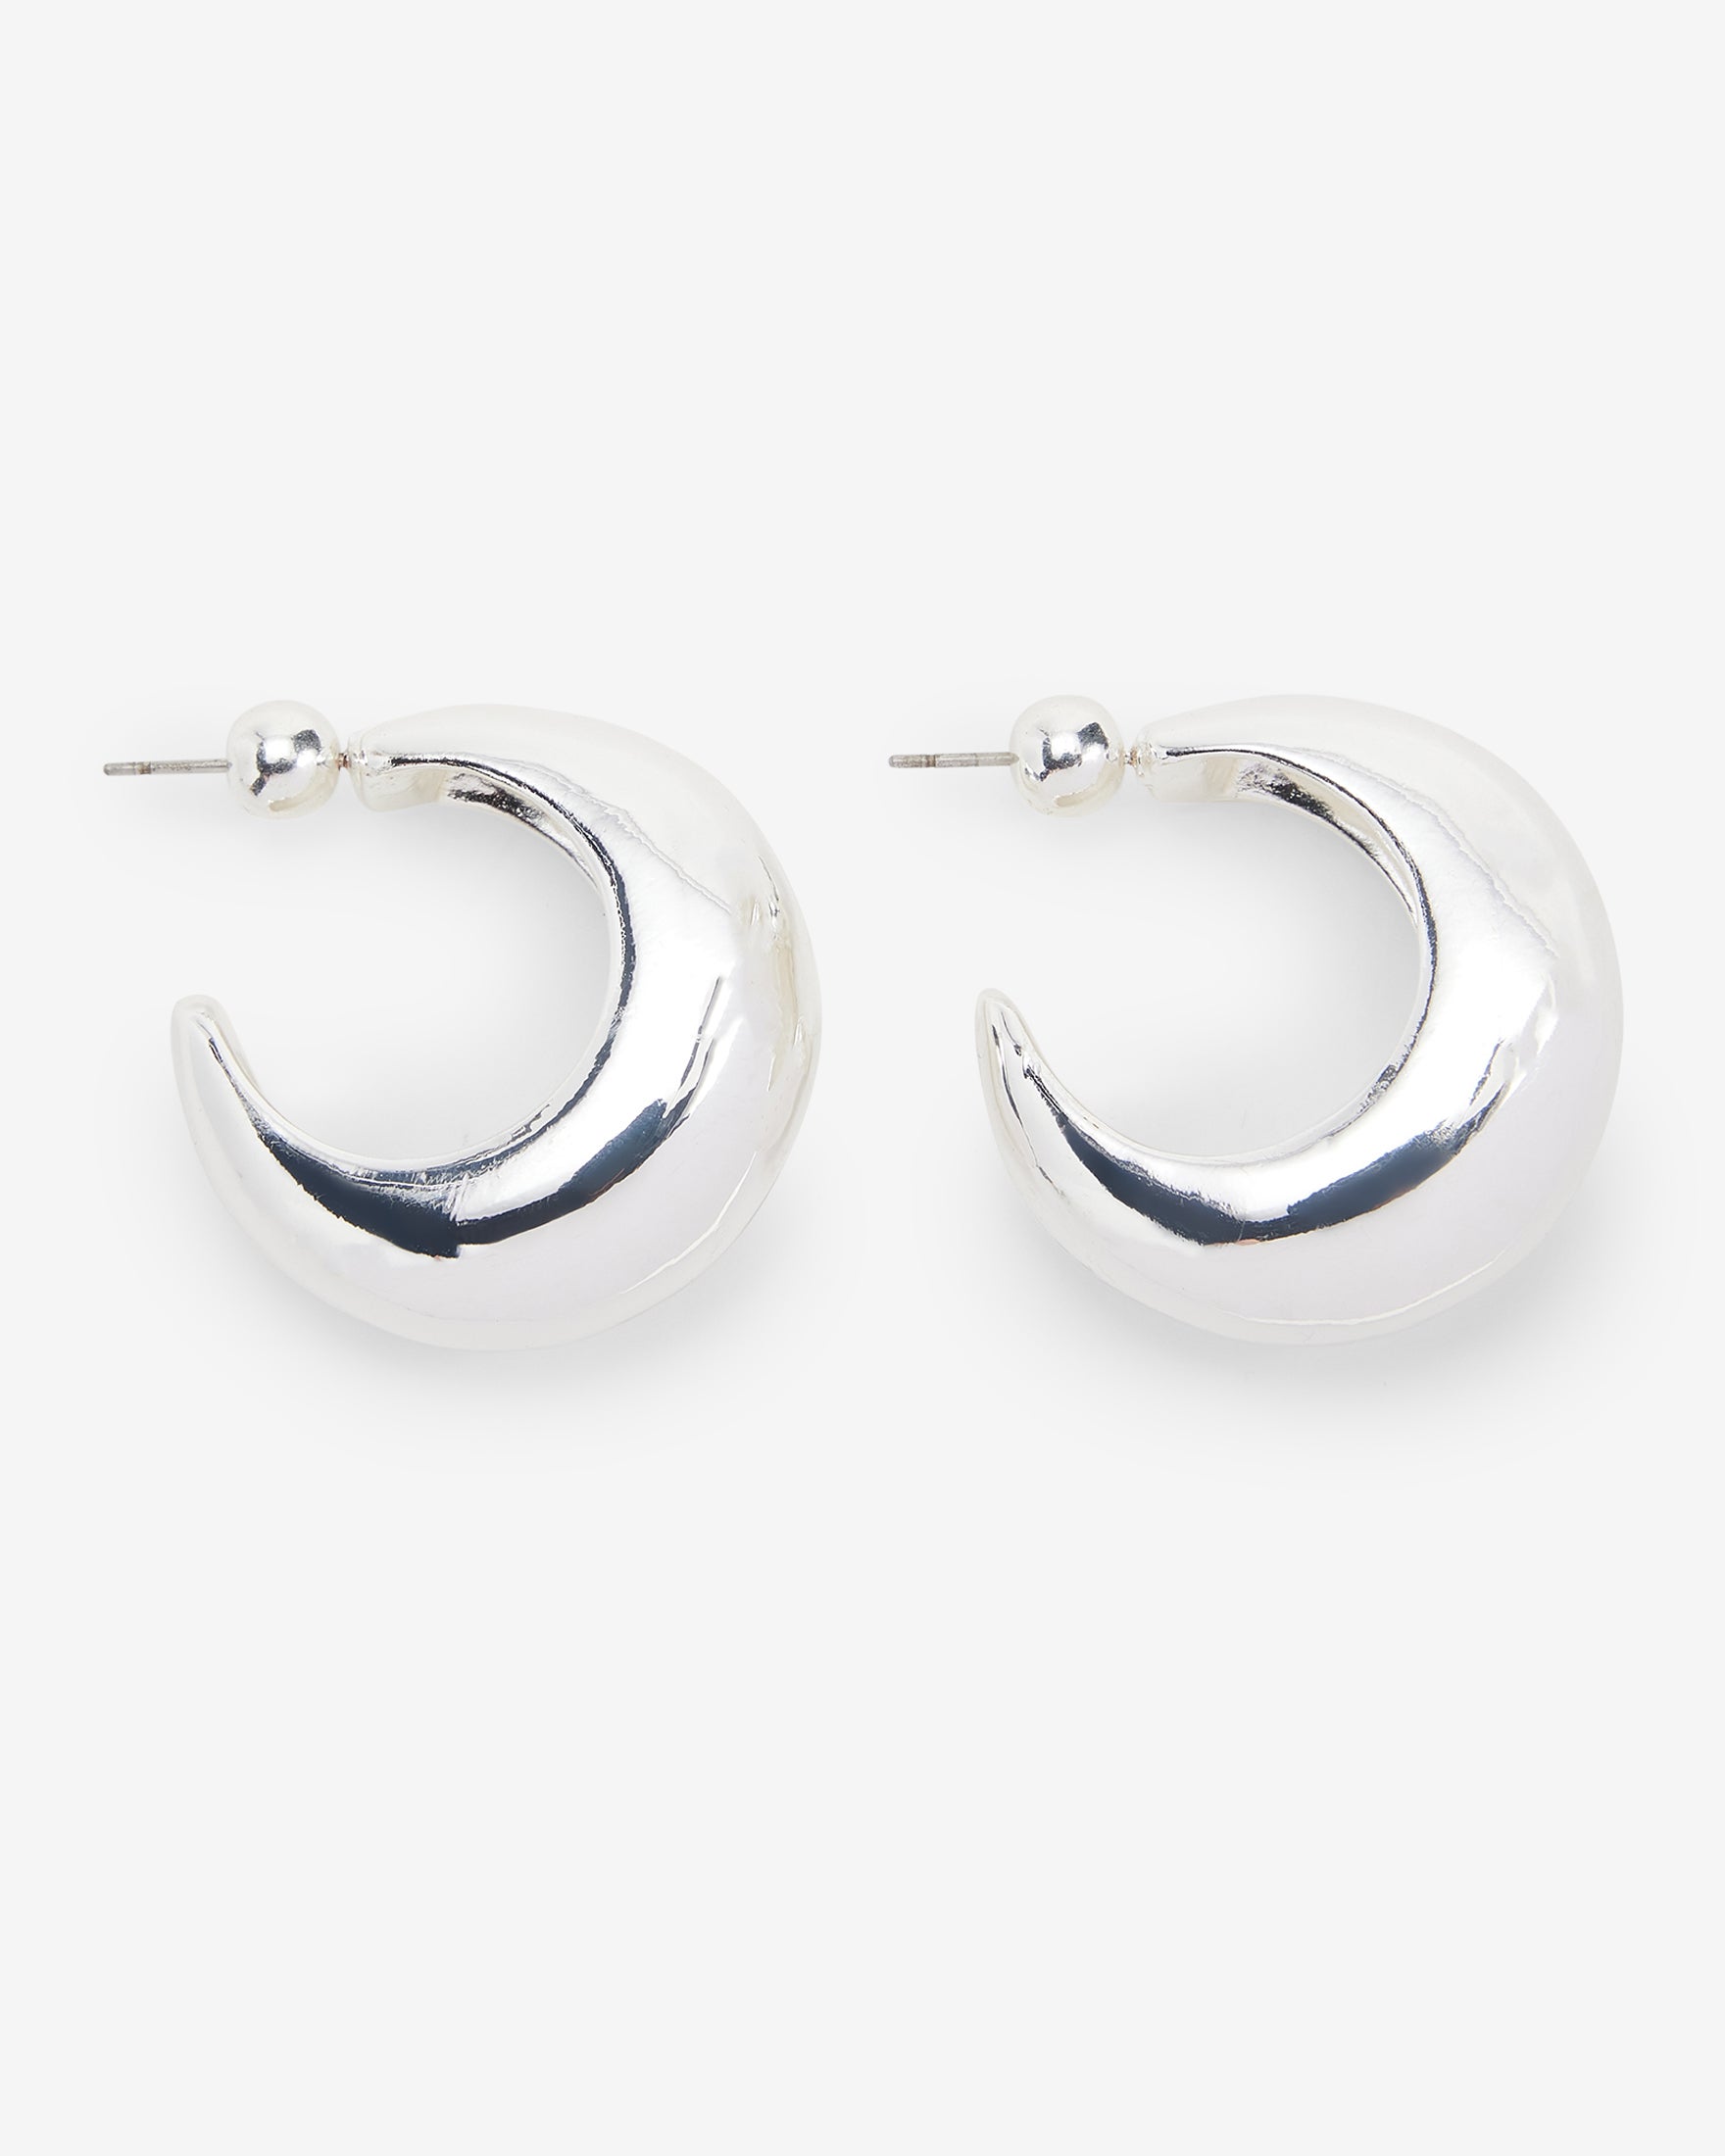 Thick silver hoop earrings earrings